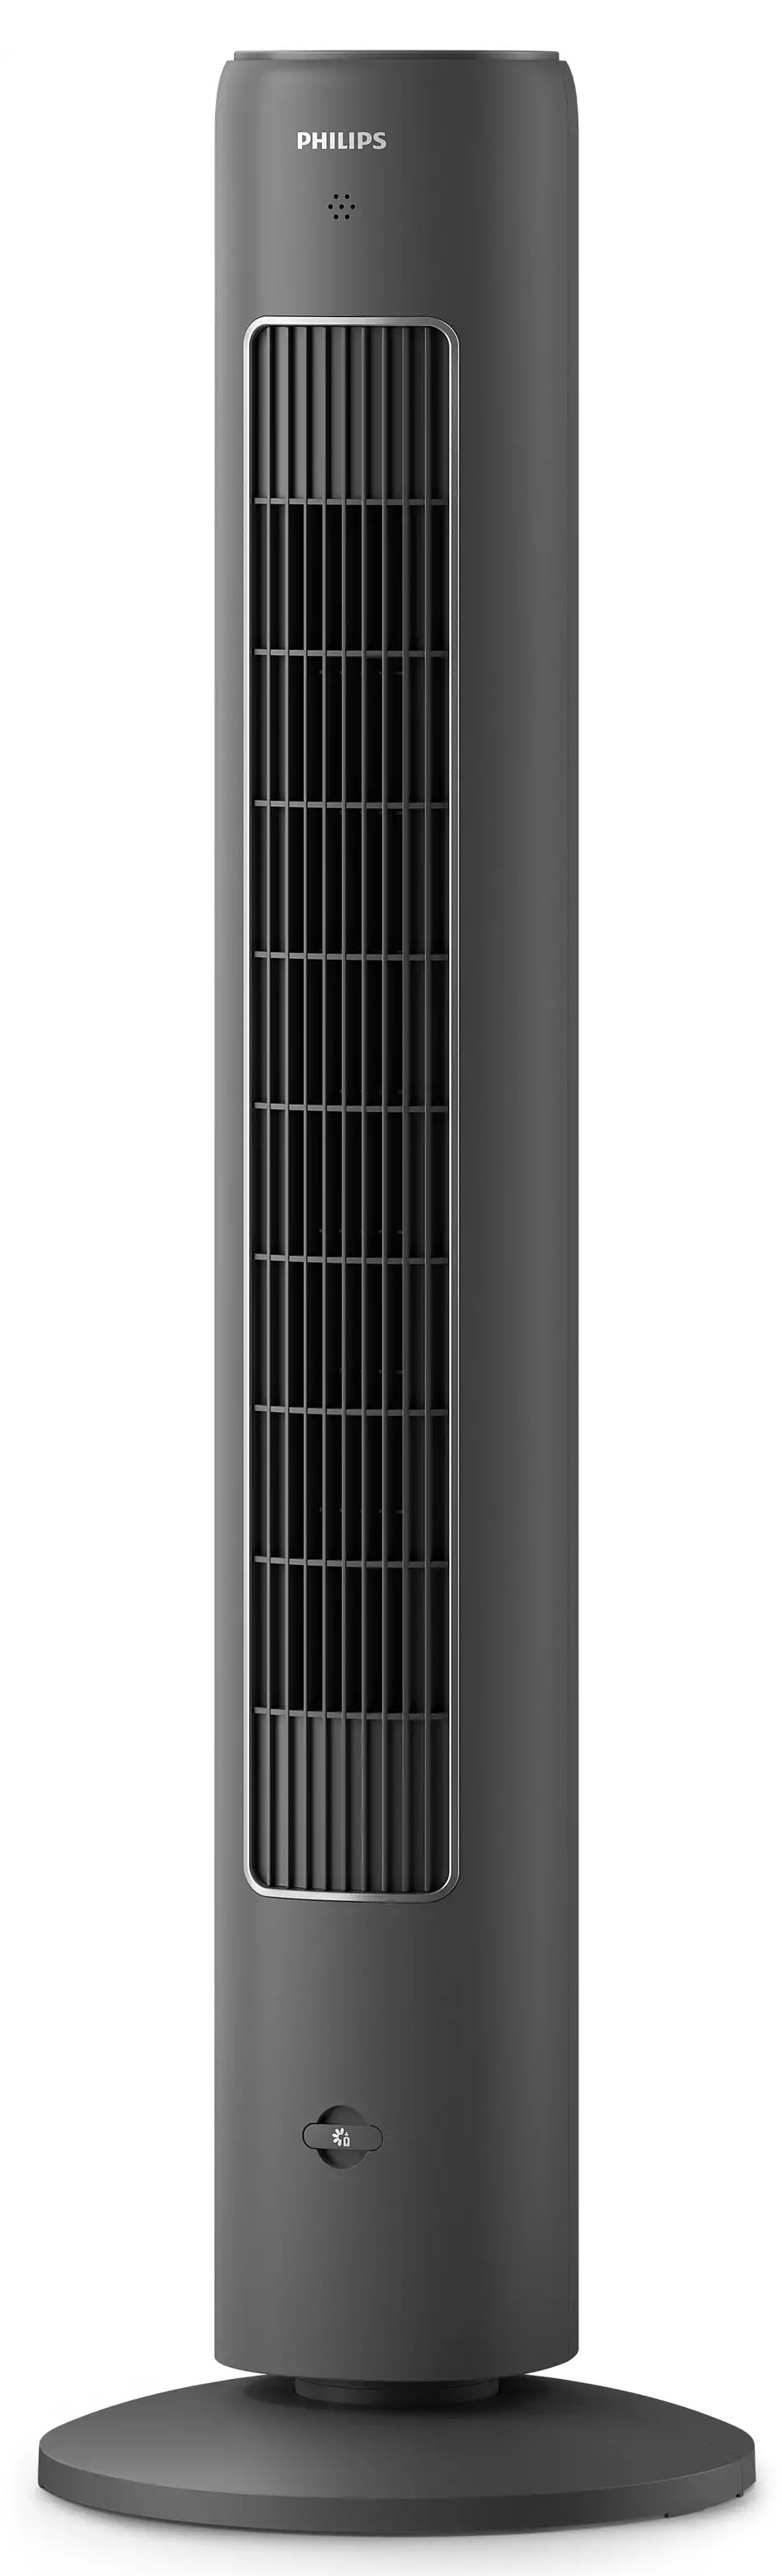 Напольный вентилятор с пультом ДУ Philips CX5535/11